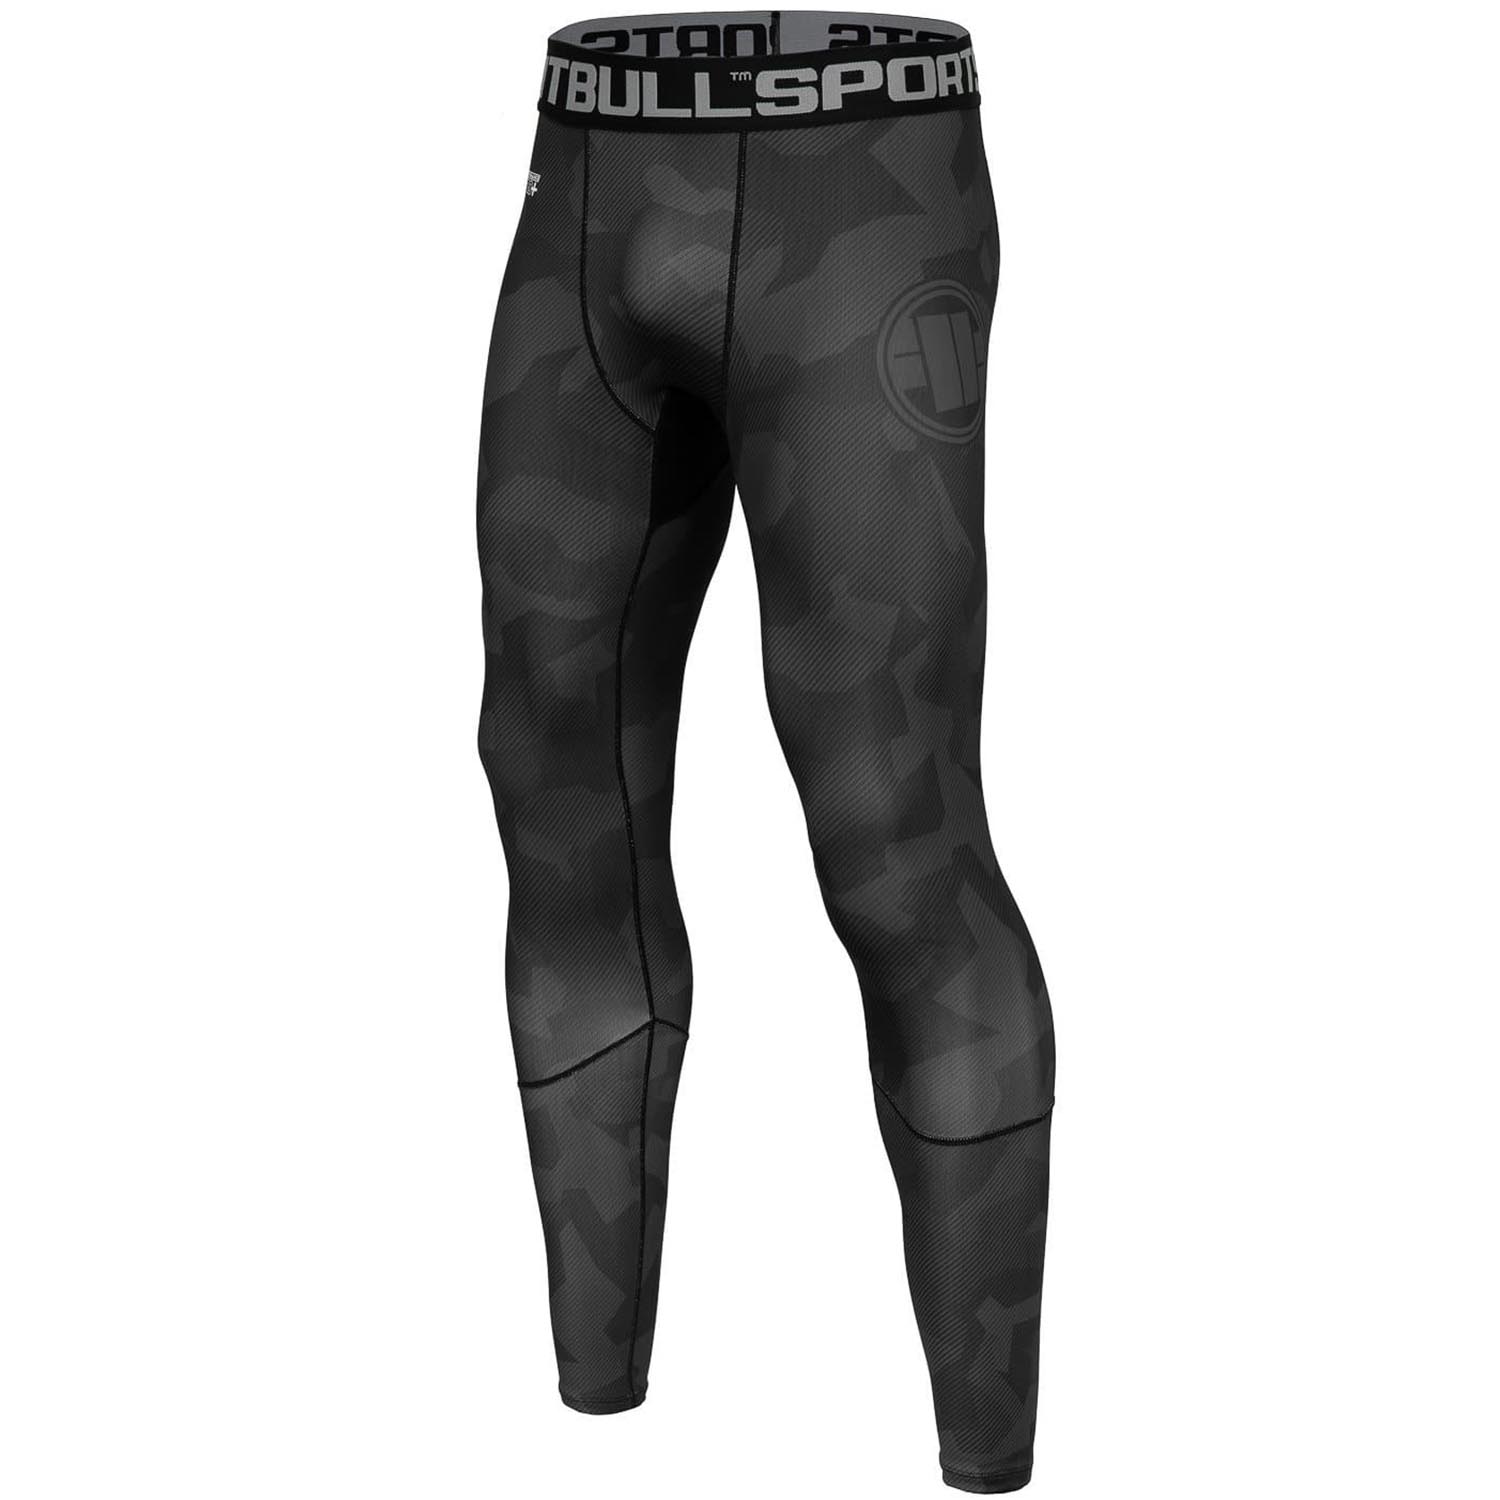 Pit Bull West Coast Compression Pants, Dillard, camo-black, XXXL